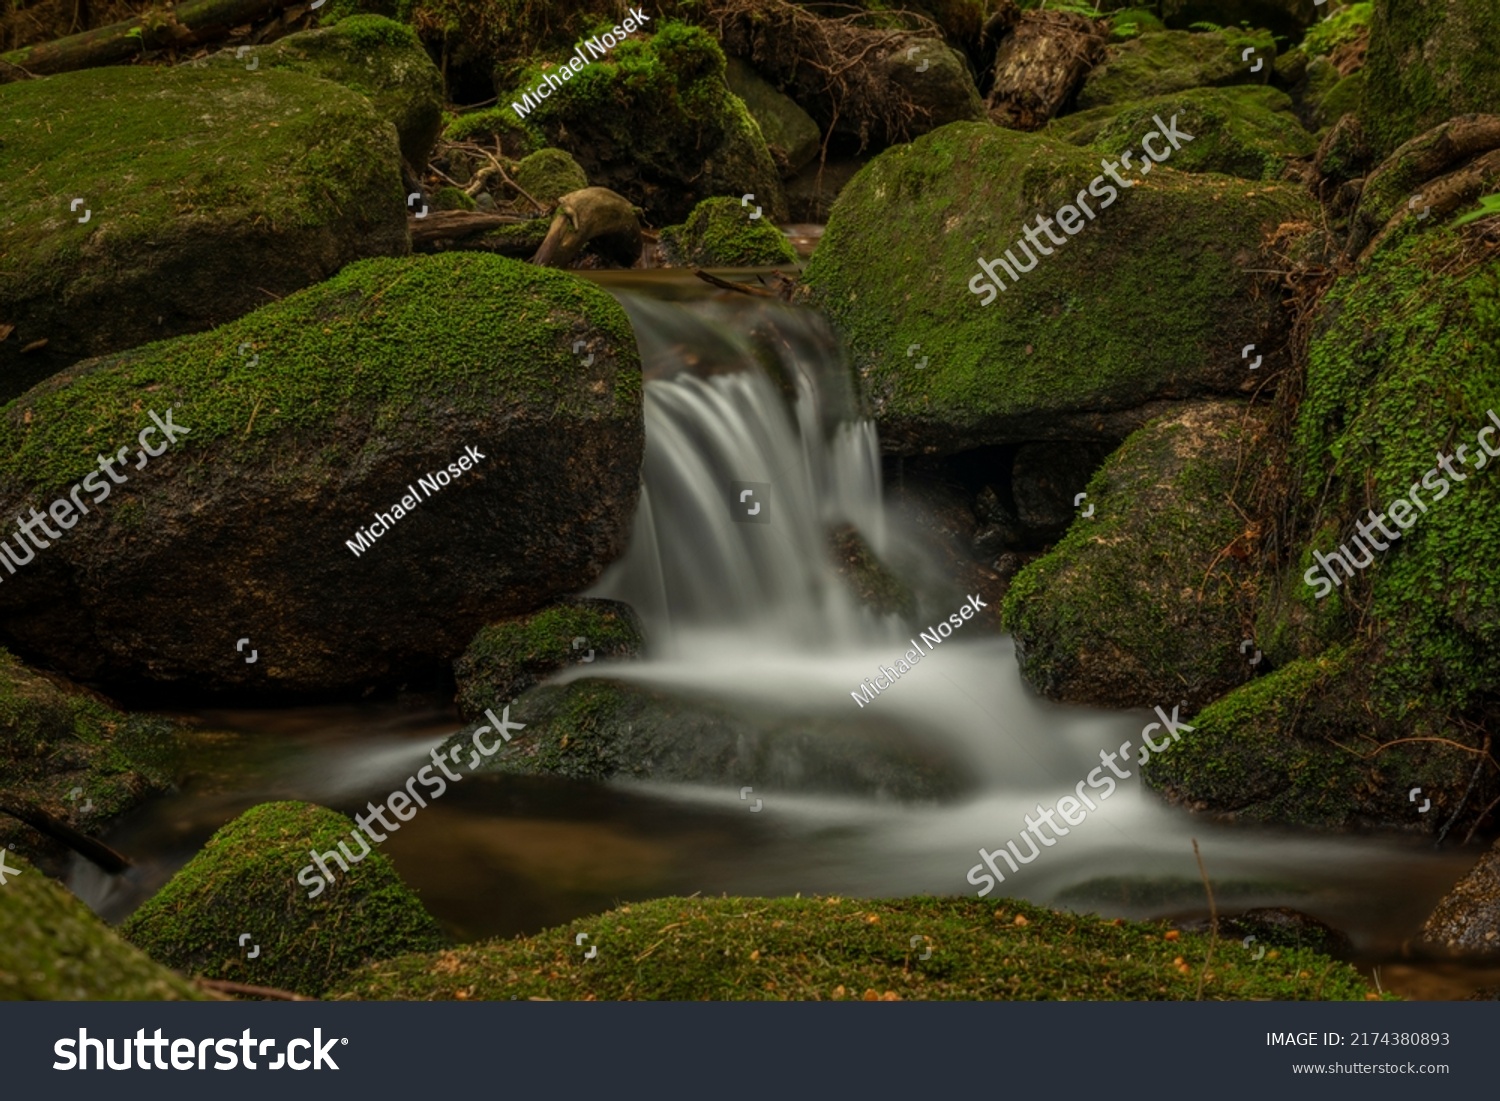 Jodlowka creek near Borowice village in Krkonose mountains in spring day #2174380893